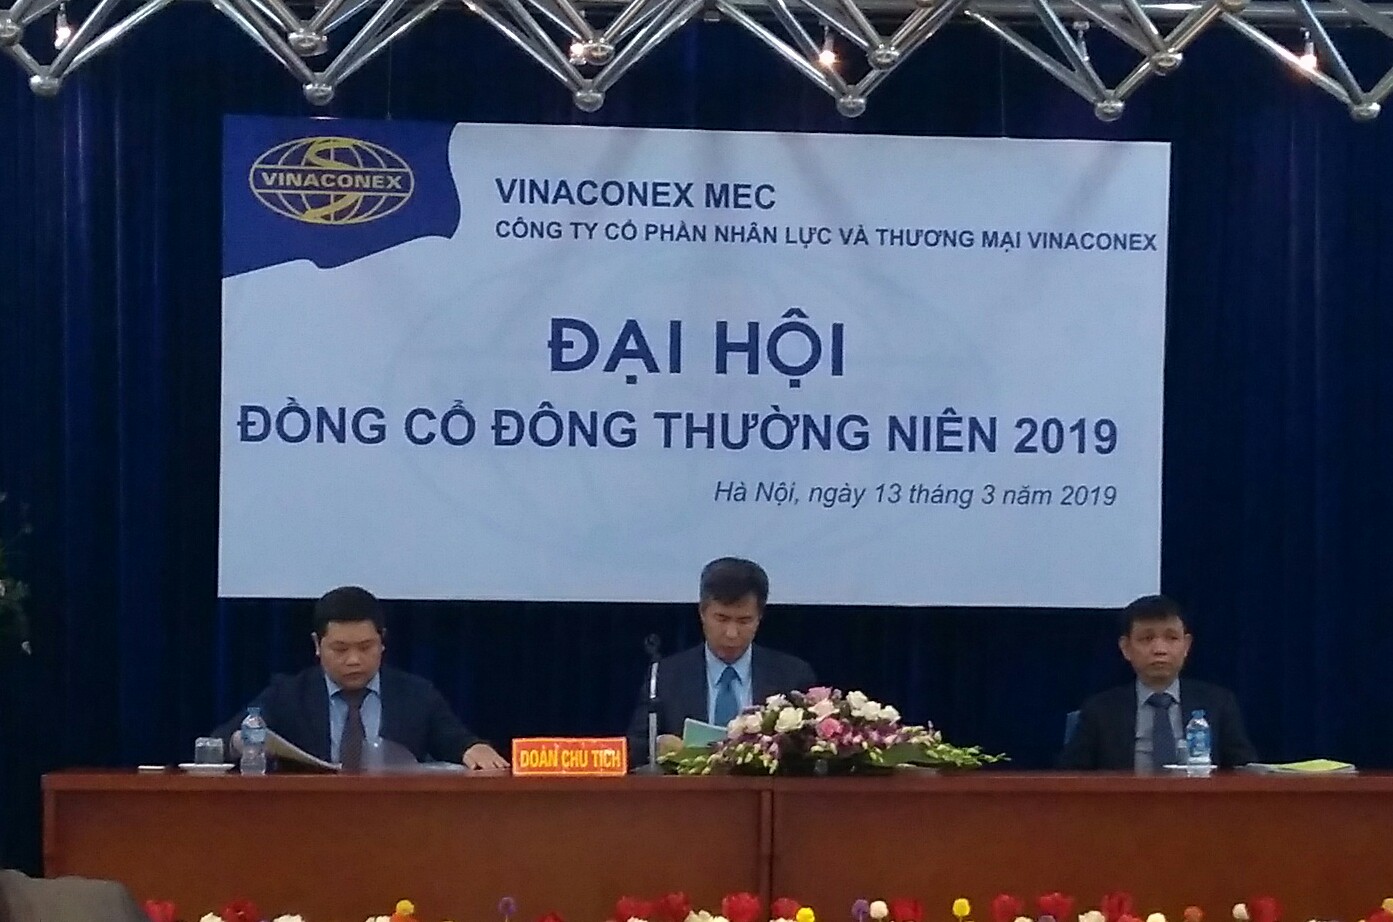 Cuộc họp Đại hội đồng cổ đông của MEC diễn ra chiều 13/3 tại Hà Nội